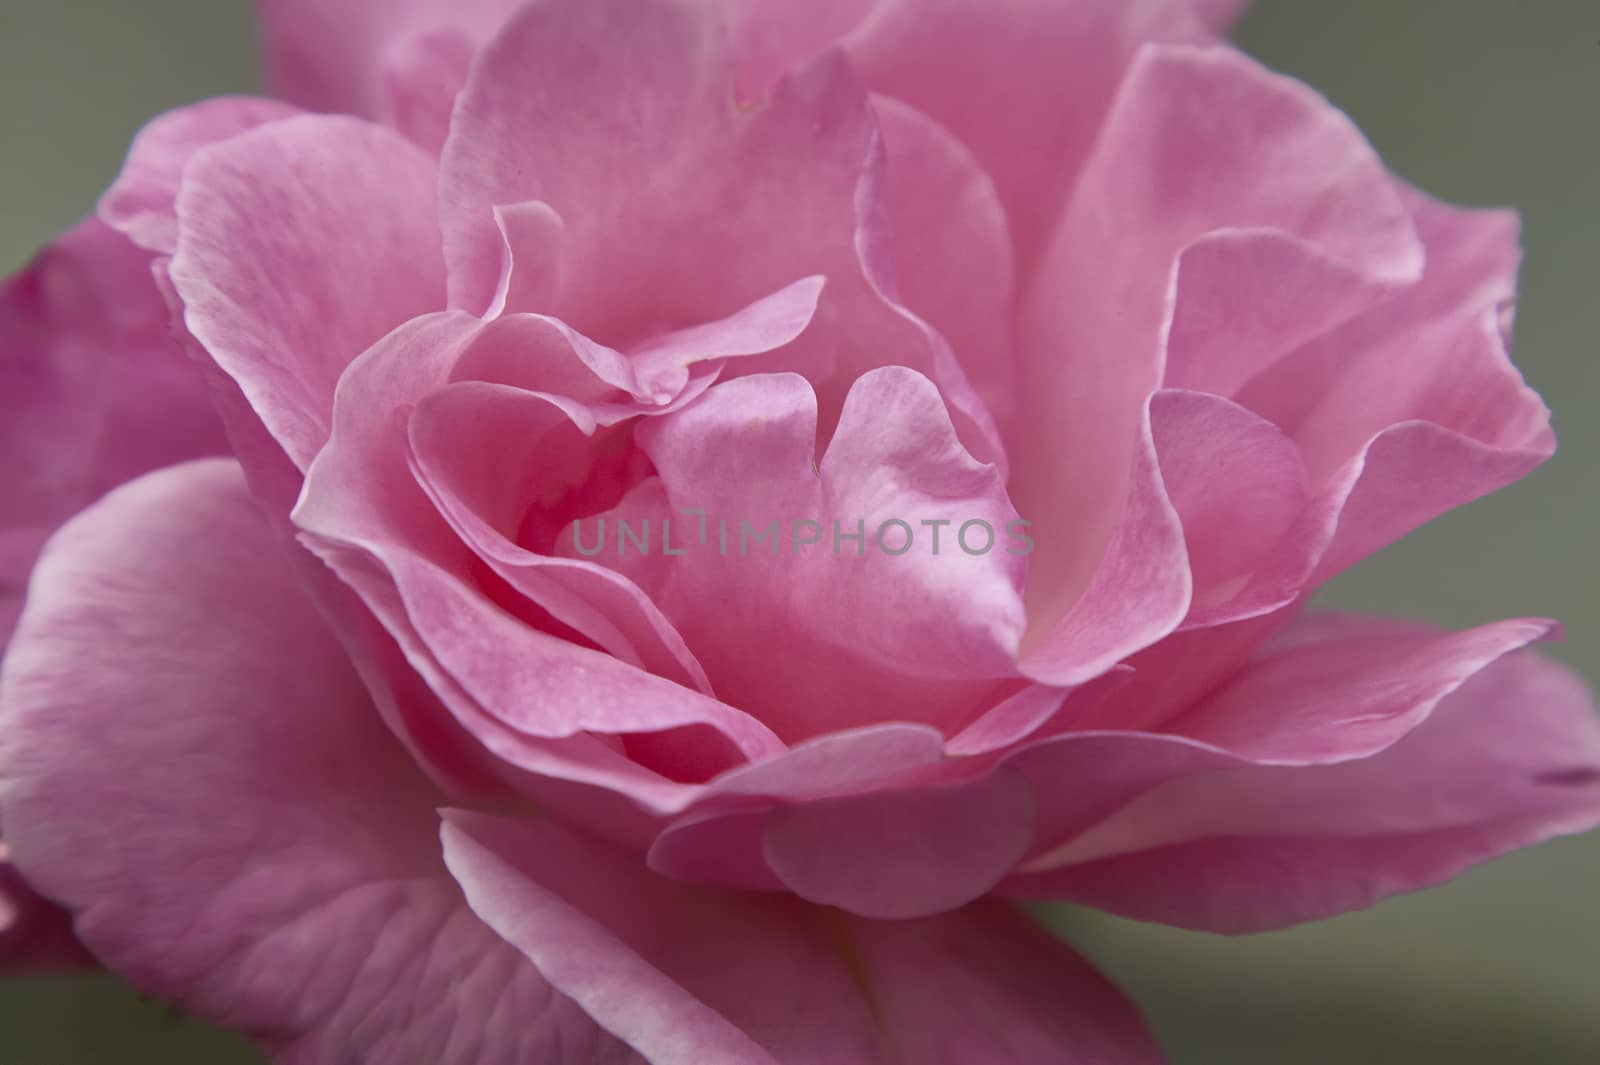 Rose petals by pippocarlot